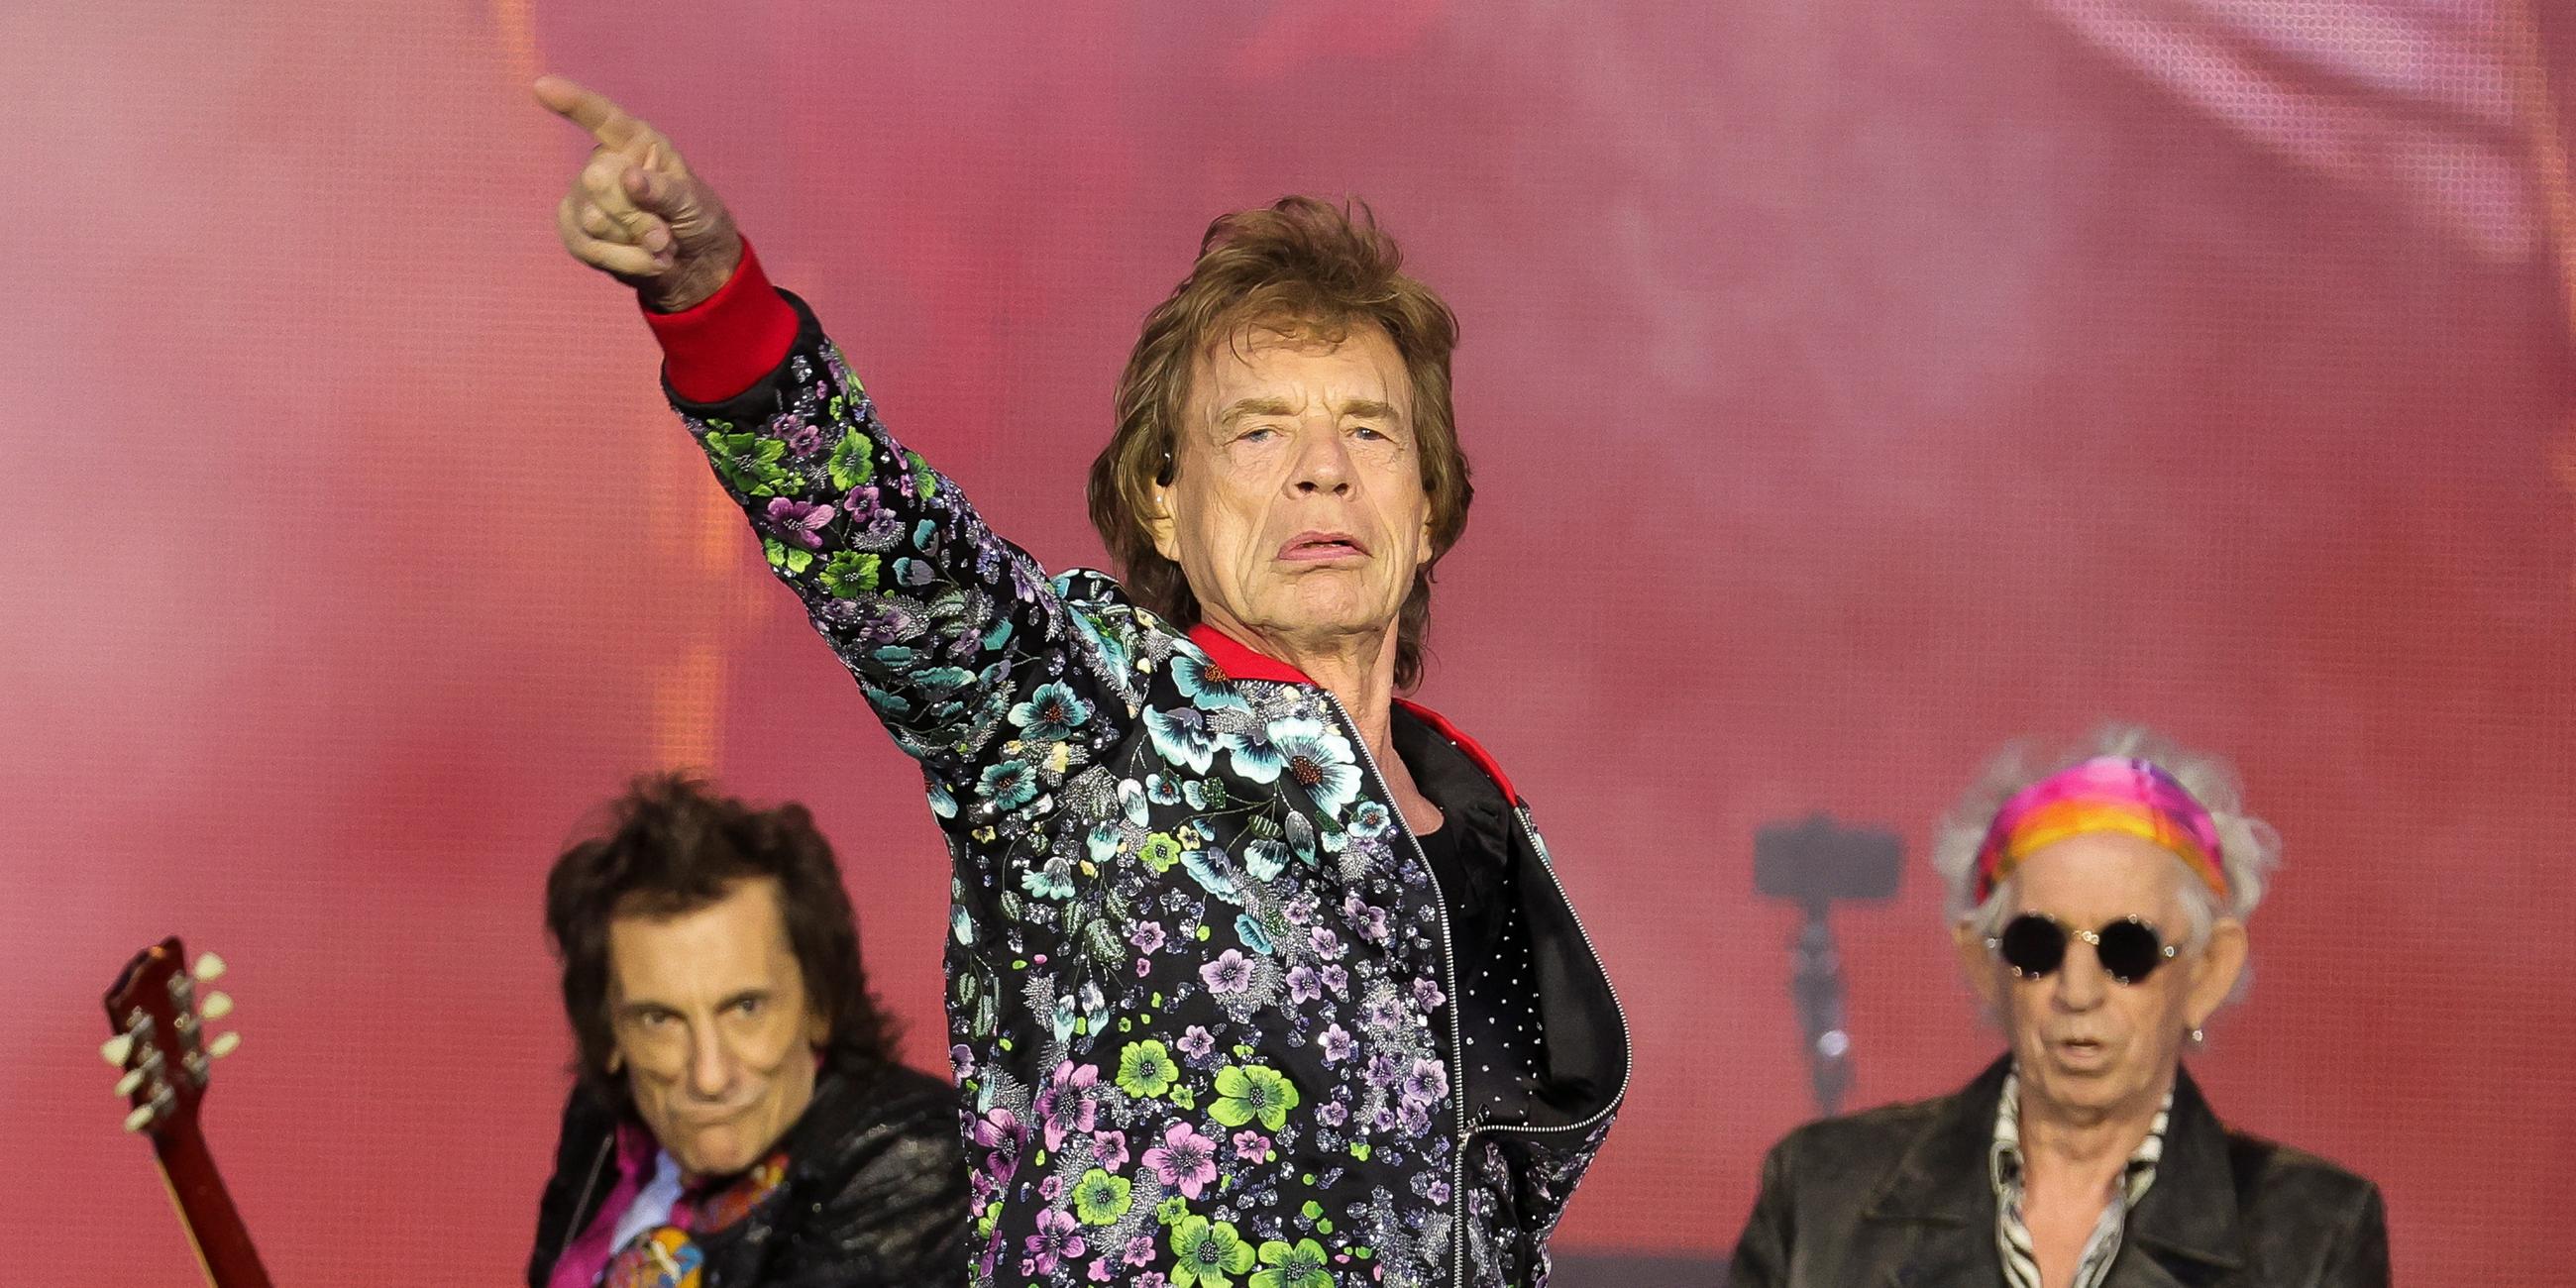 Archiv: Mick Jagger, Ronnie Wood und Keith Richards von den Rolling Stones stehen bei einem Konzert auf der Bühne.